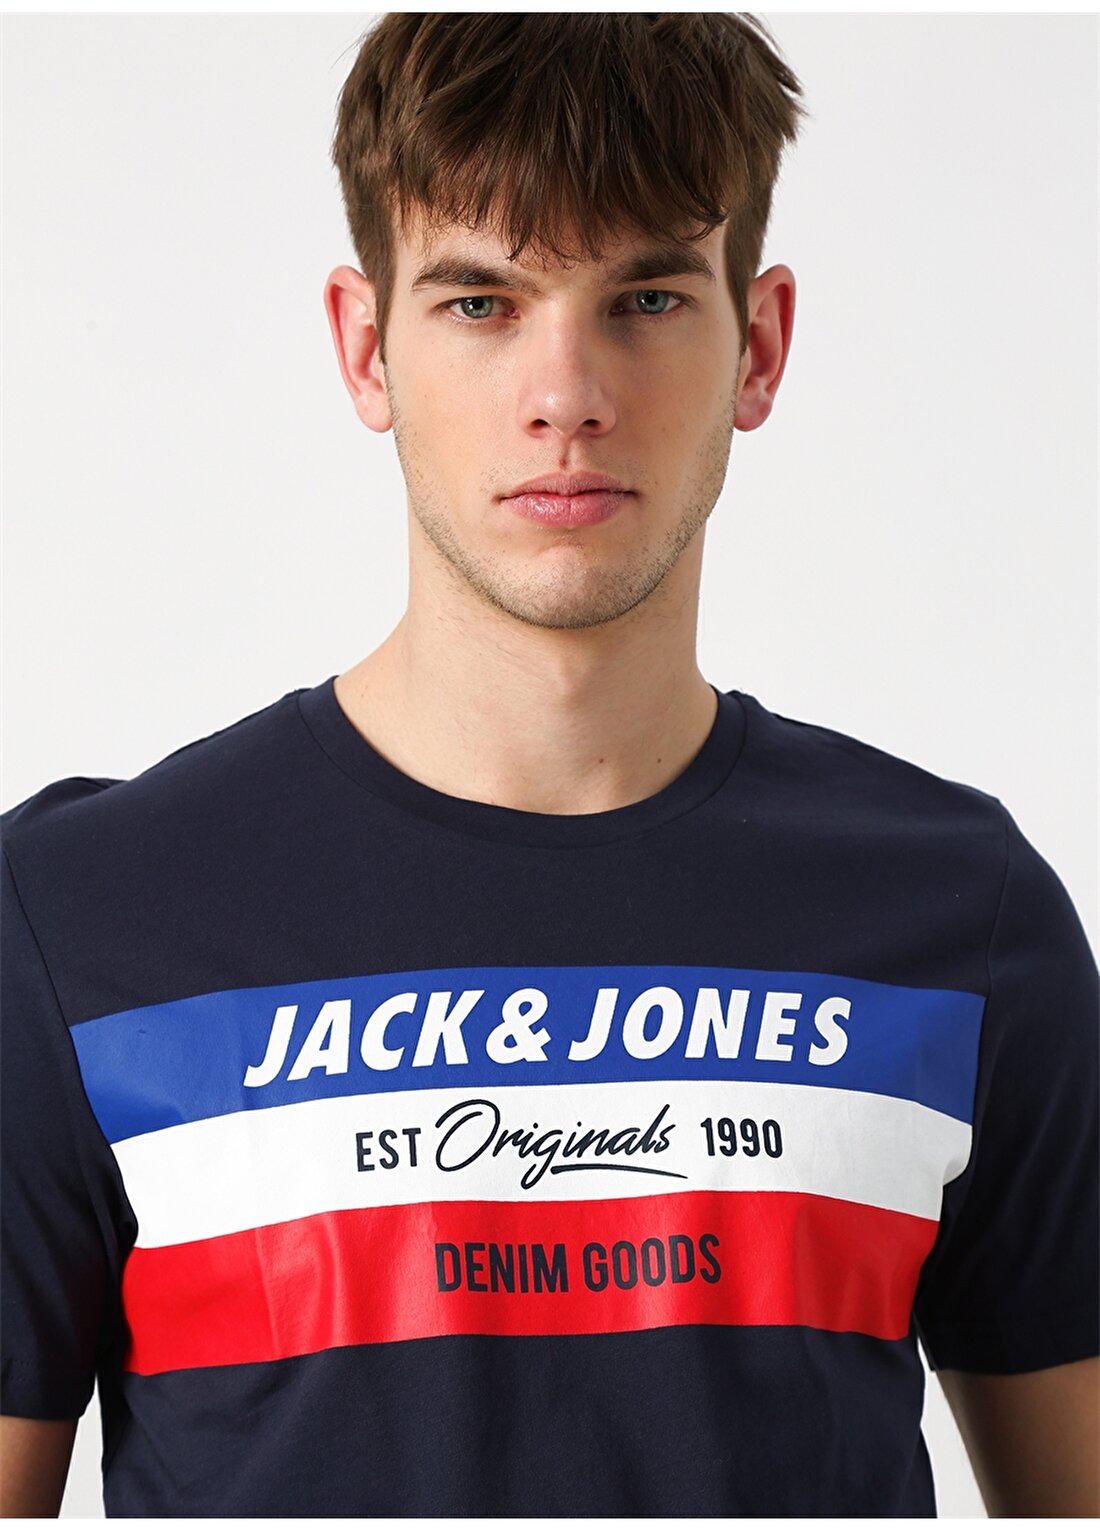 Jack & Jones Shakedowns T-Shirt